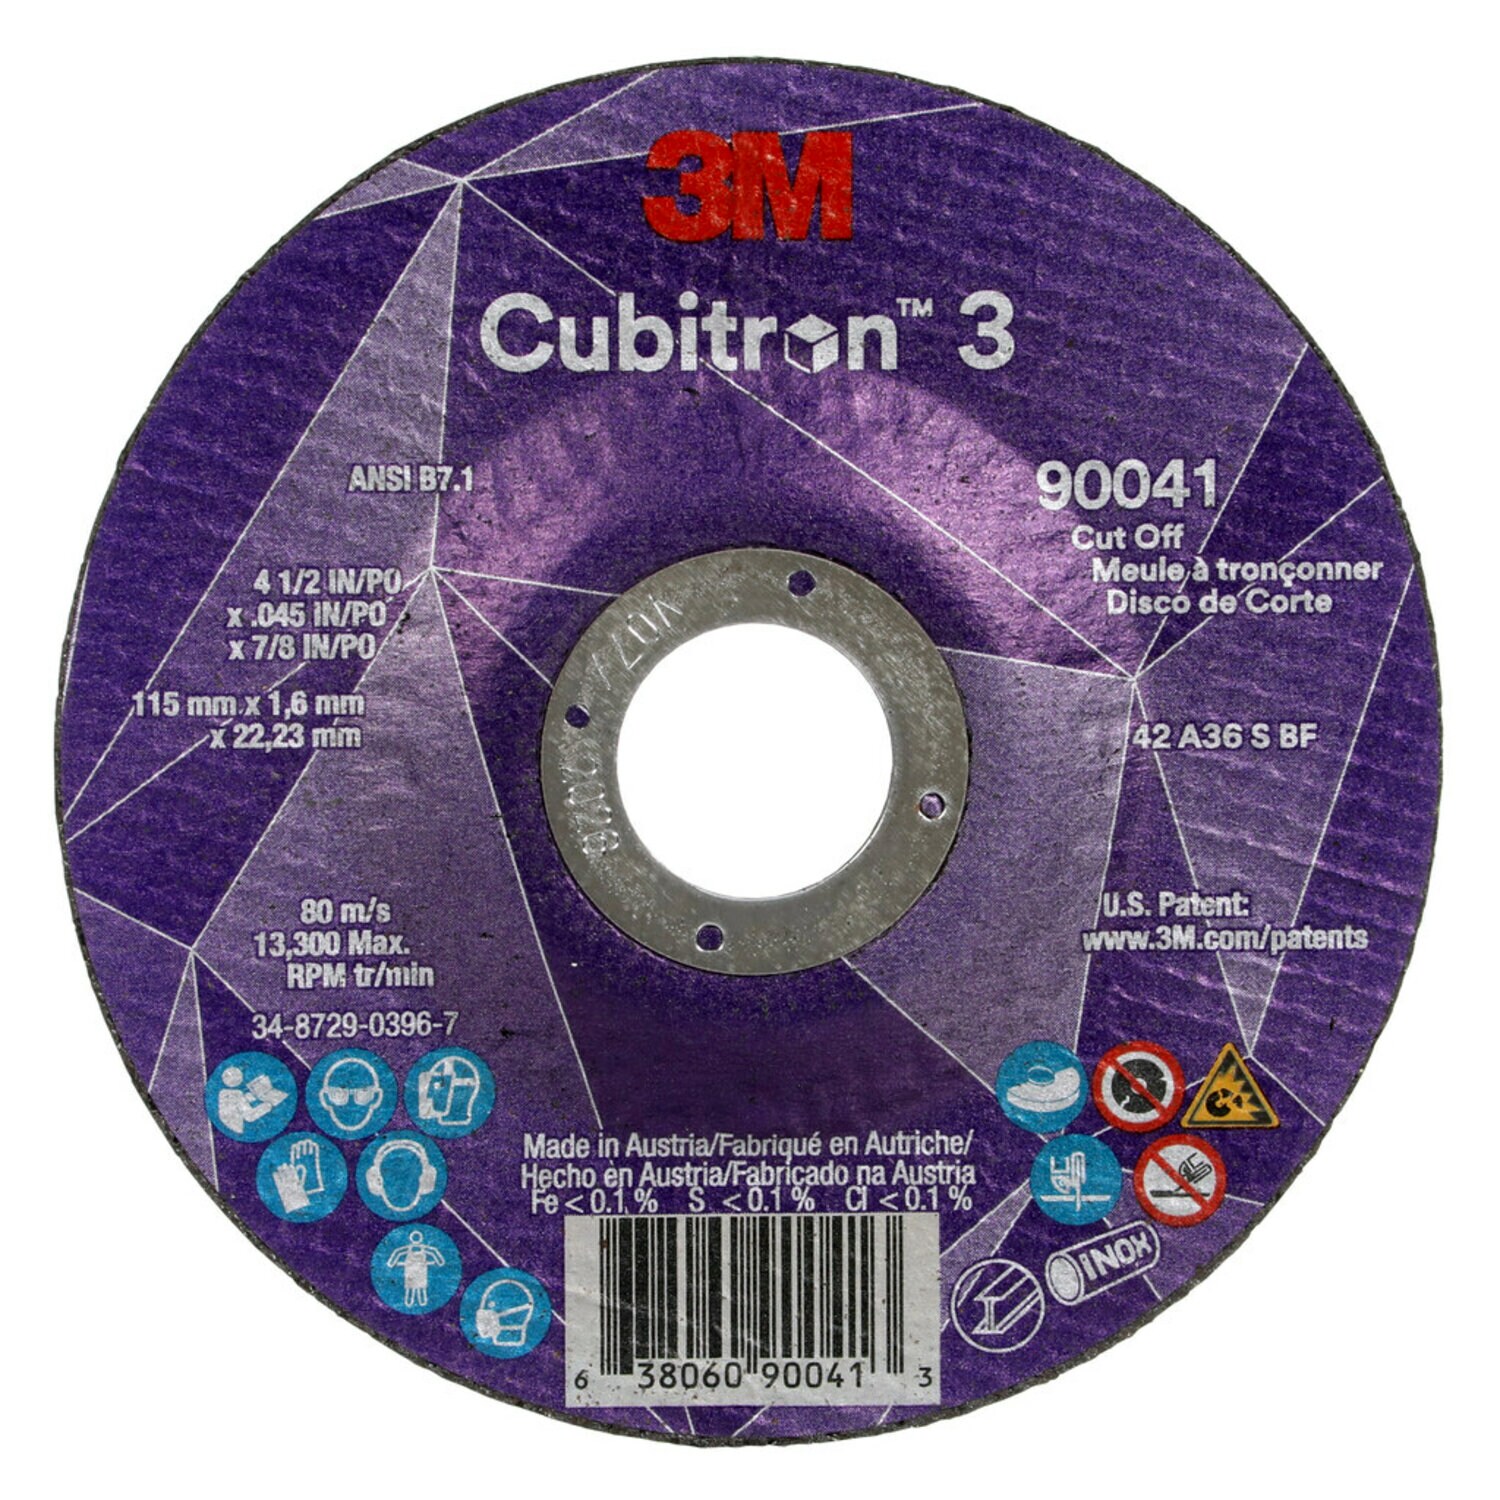 7100304008 - 3M Cubitron 3 Cut-Off Wheel, 90041, 36+, T27, 4-1/2 in x 0.045 in x
7/8 in (115 x 1.6 x 22.23 mm), ANSI, 25/Pack, 50 ea/Case